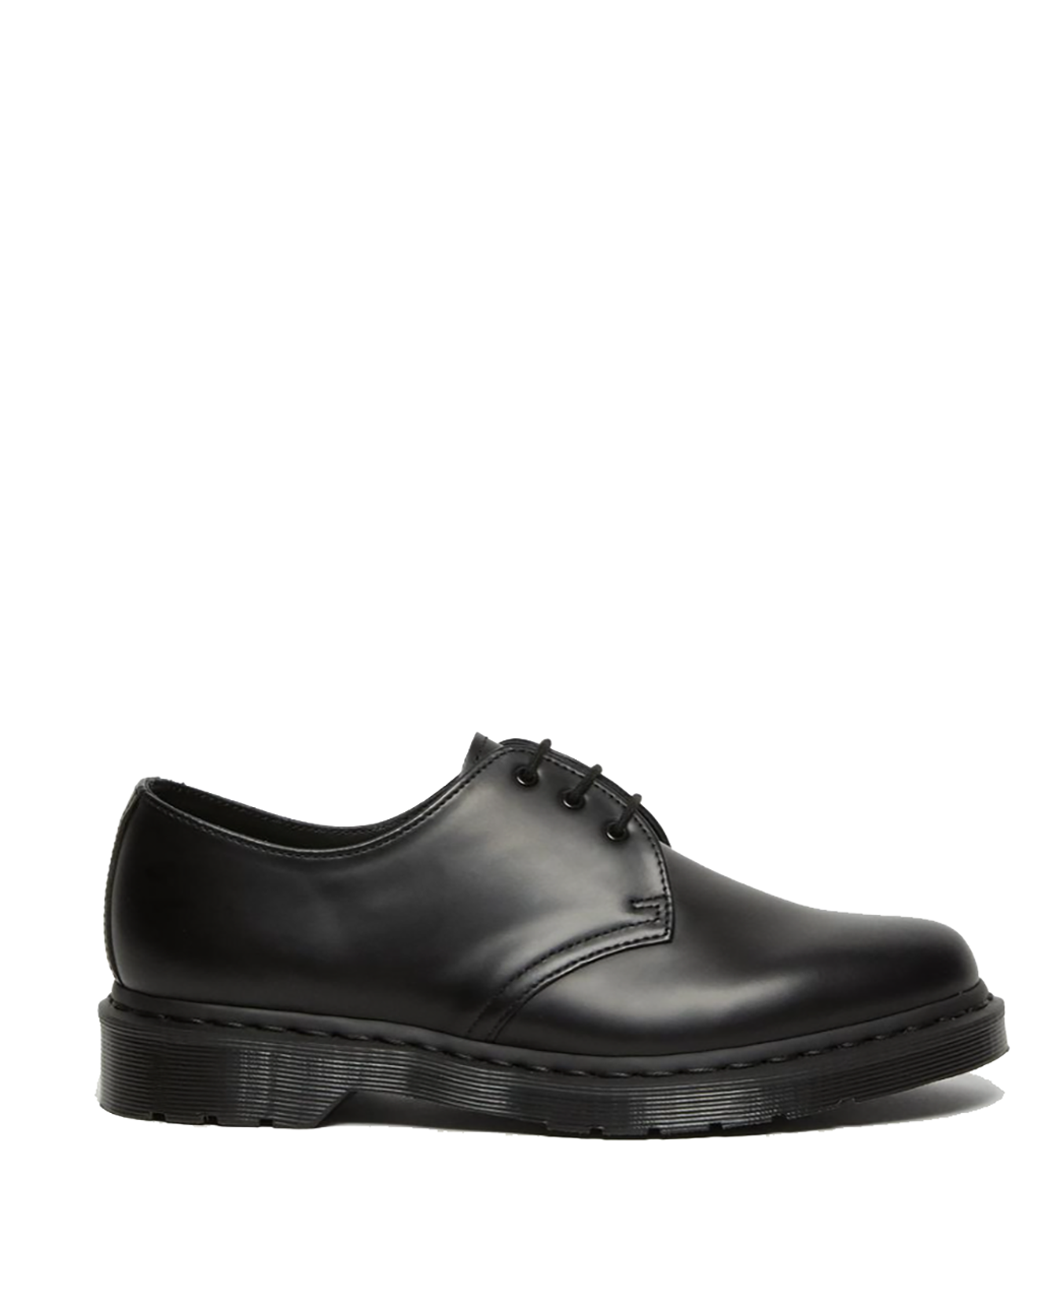 特別特価Dr.Martens VEGAN 1461 3ホール 黒 ドクターマーチン 靴